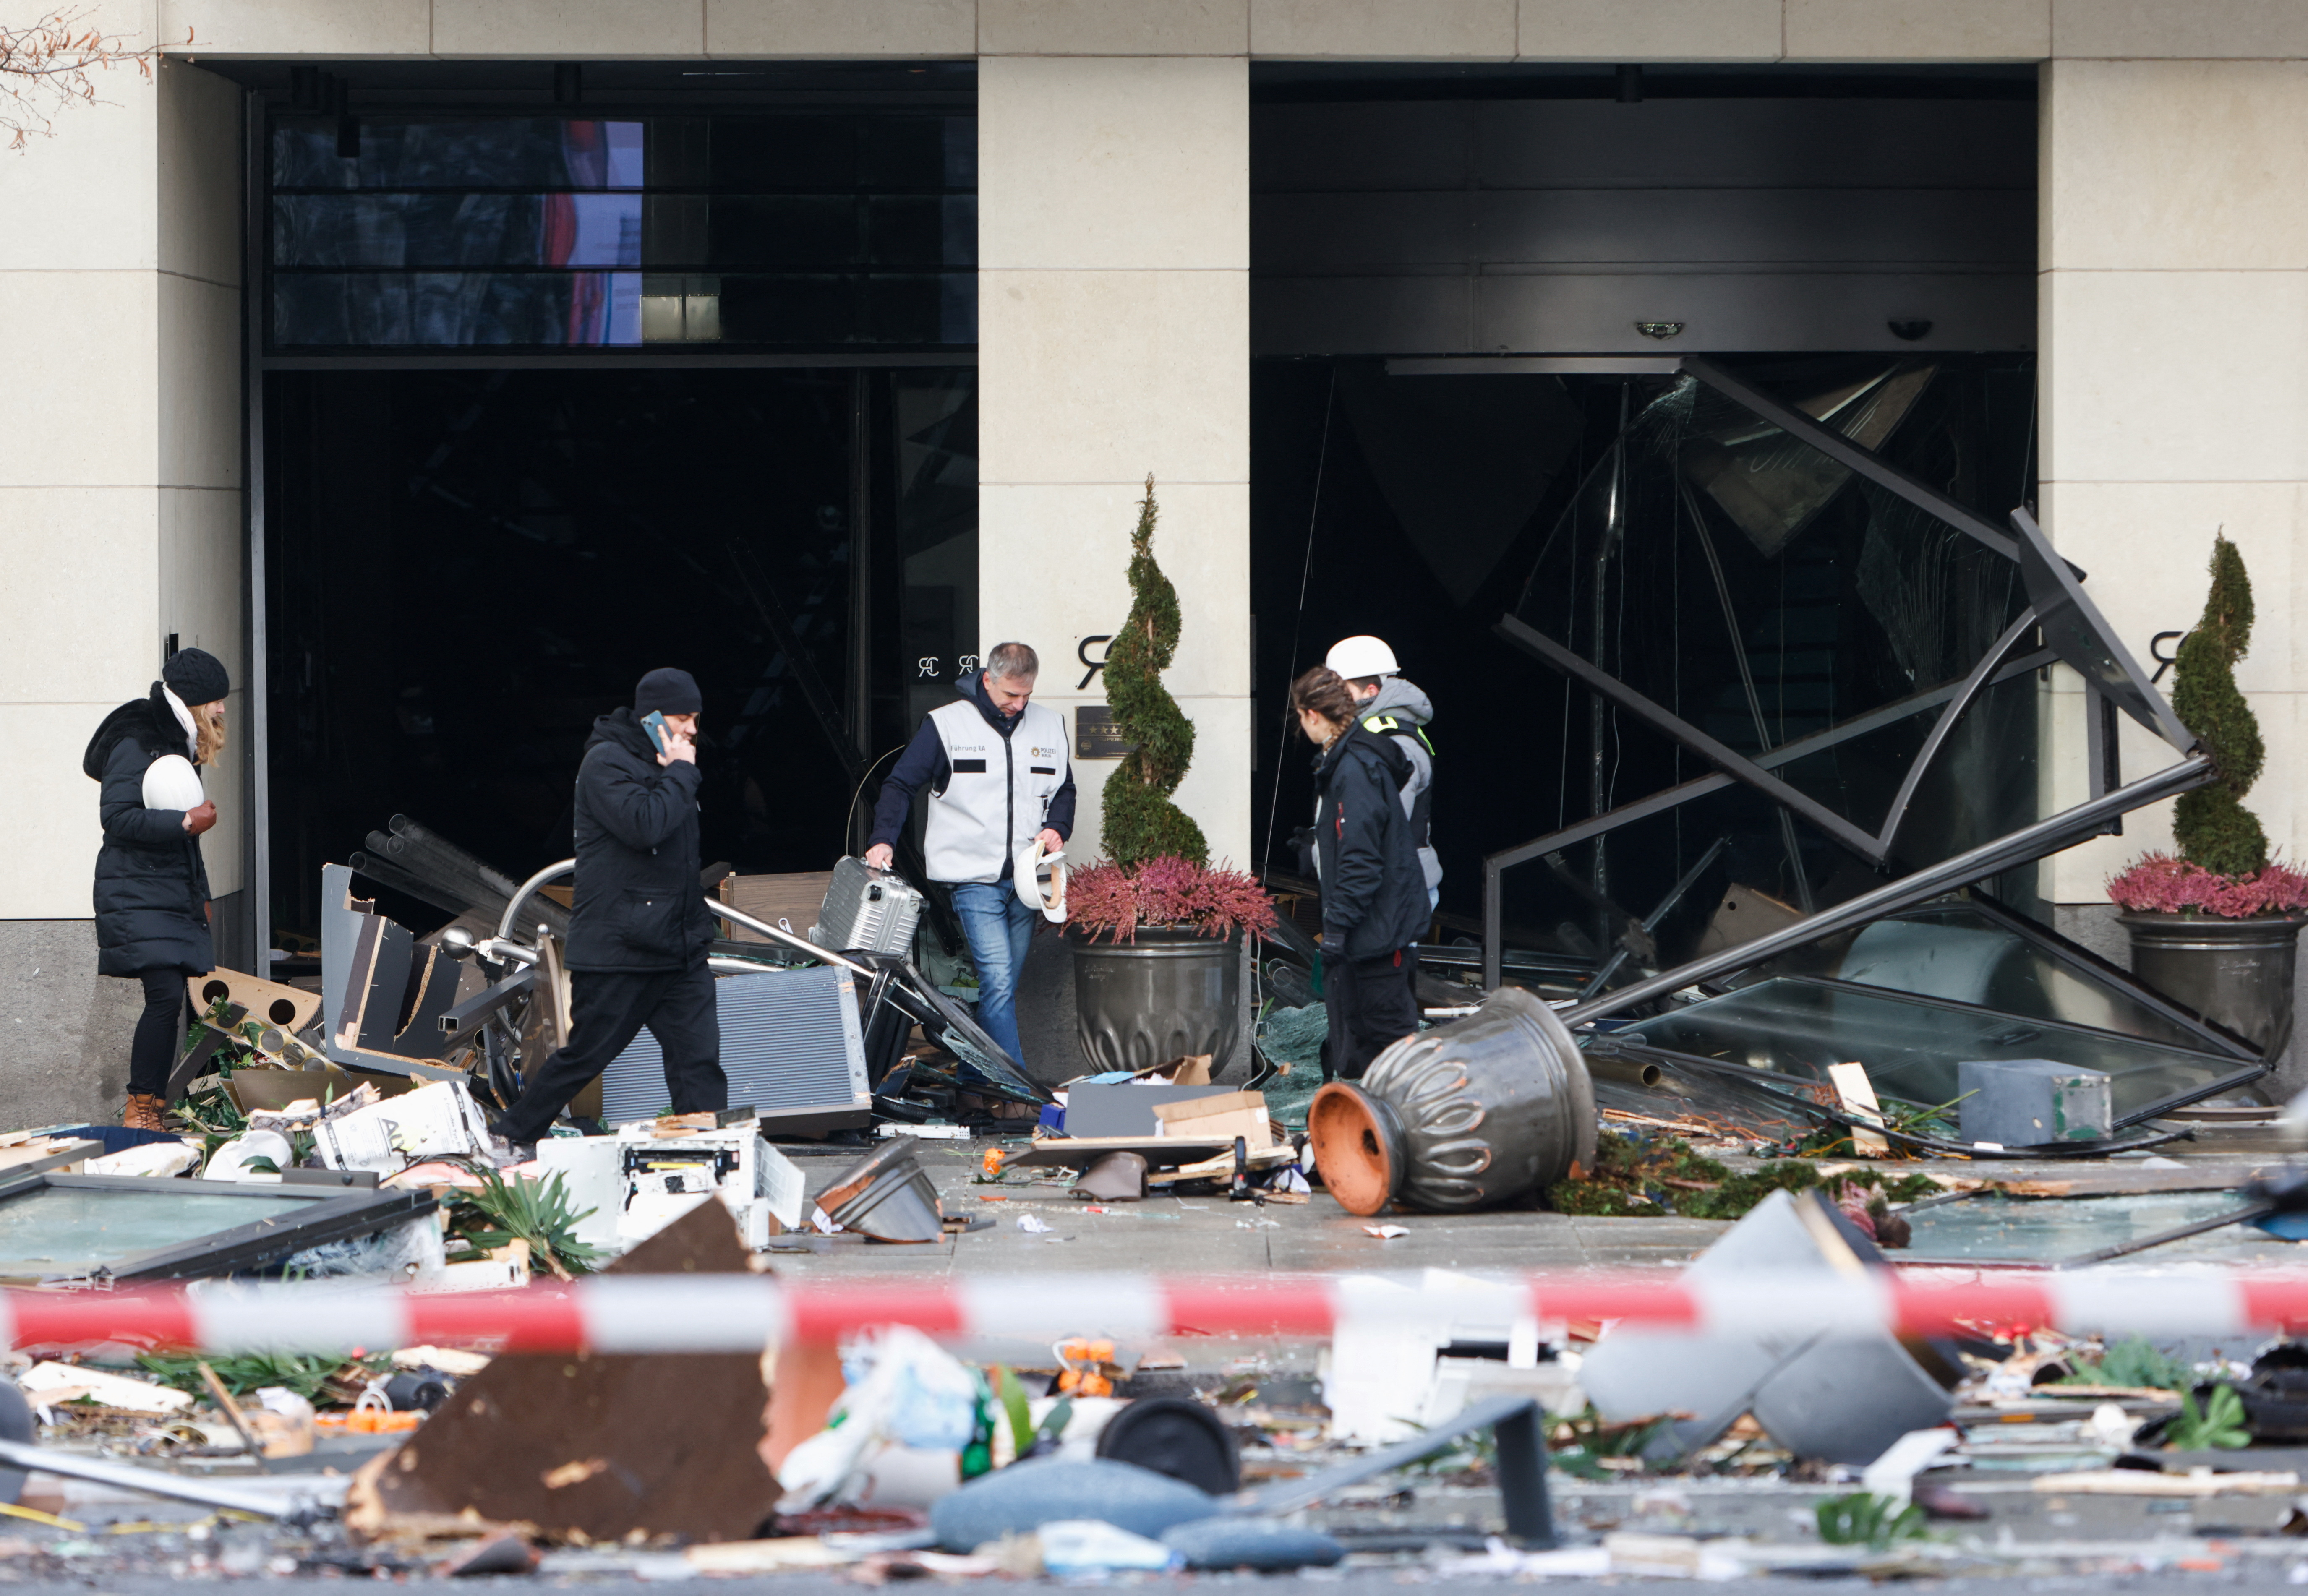 Los servicios de emergencia trabajan en una calle frente a un hotel después de una explosión y fuga del acuario AquaDom en el centro de Berlín